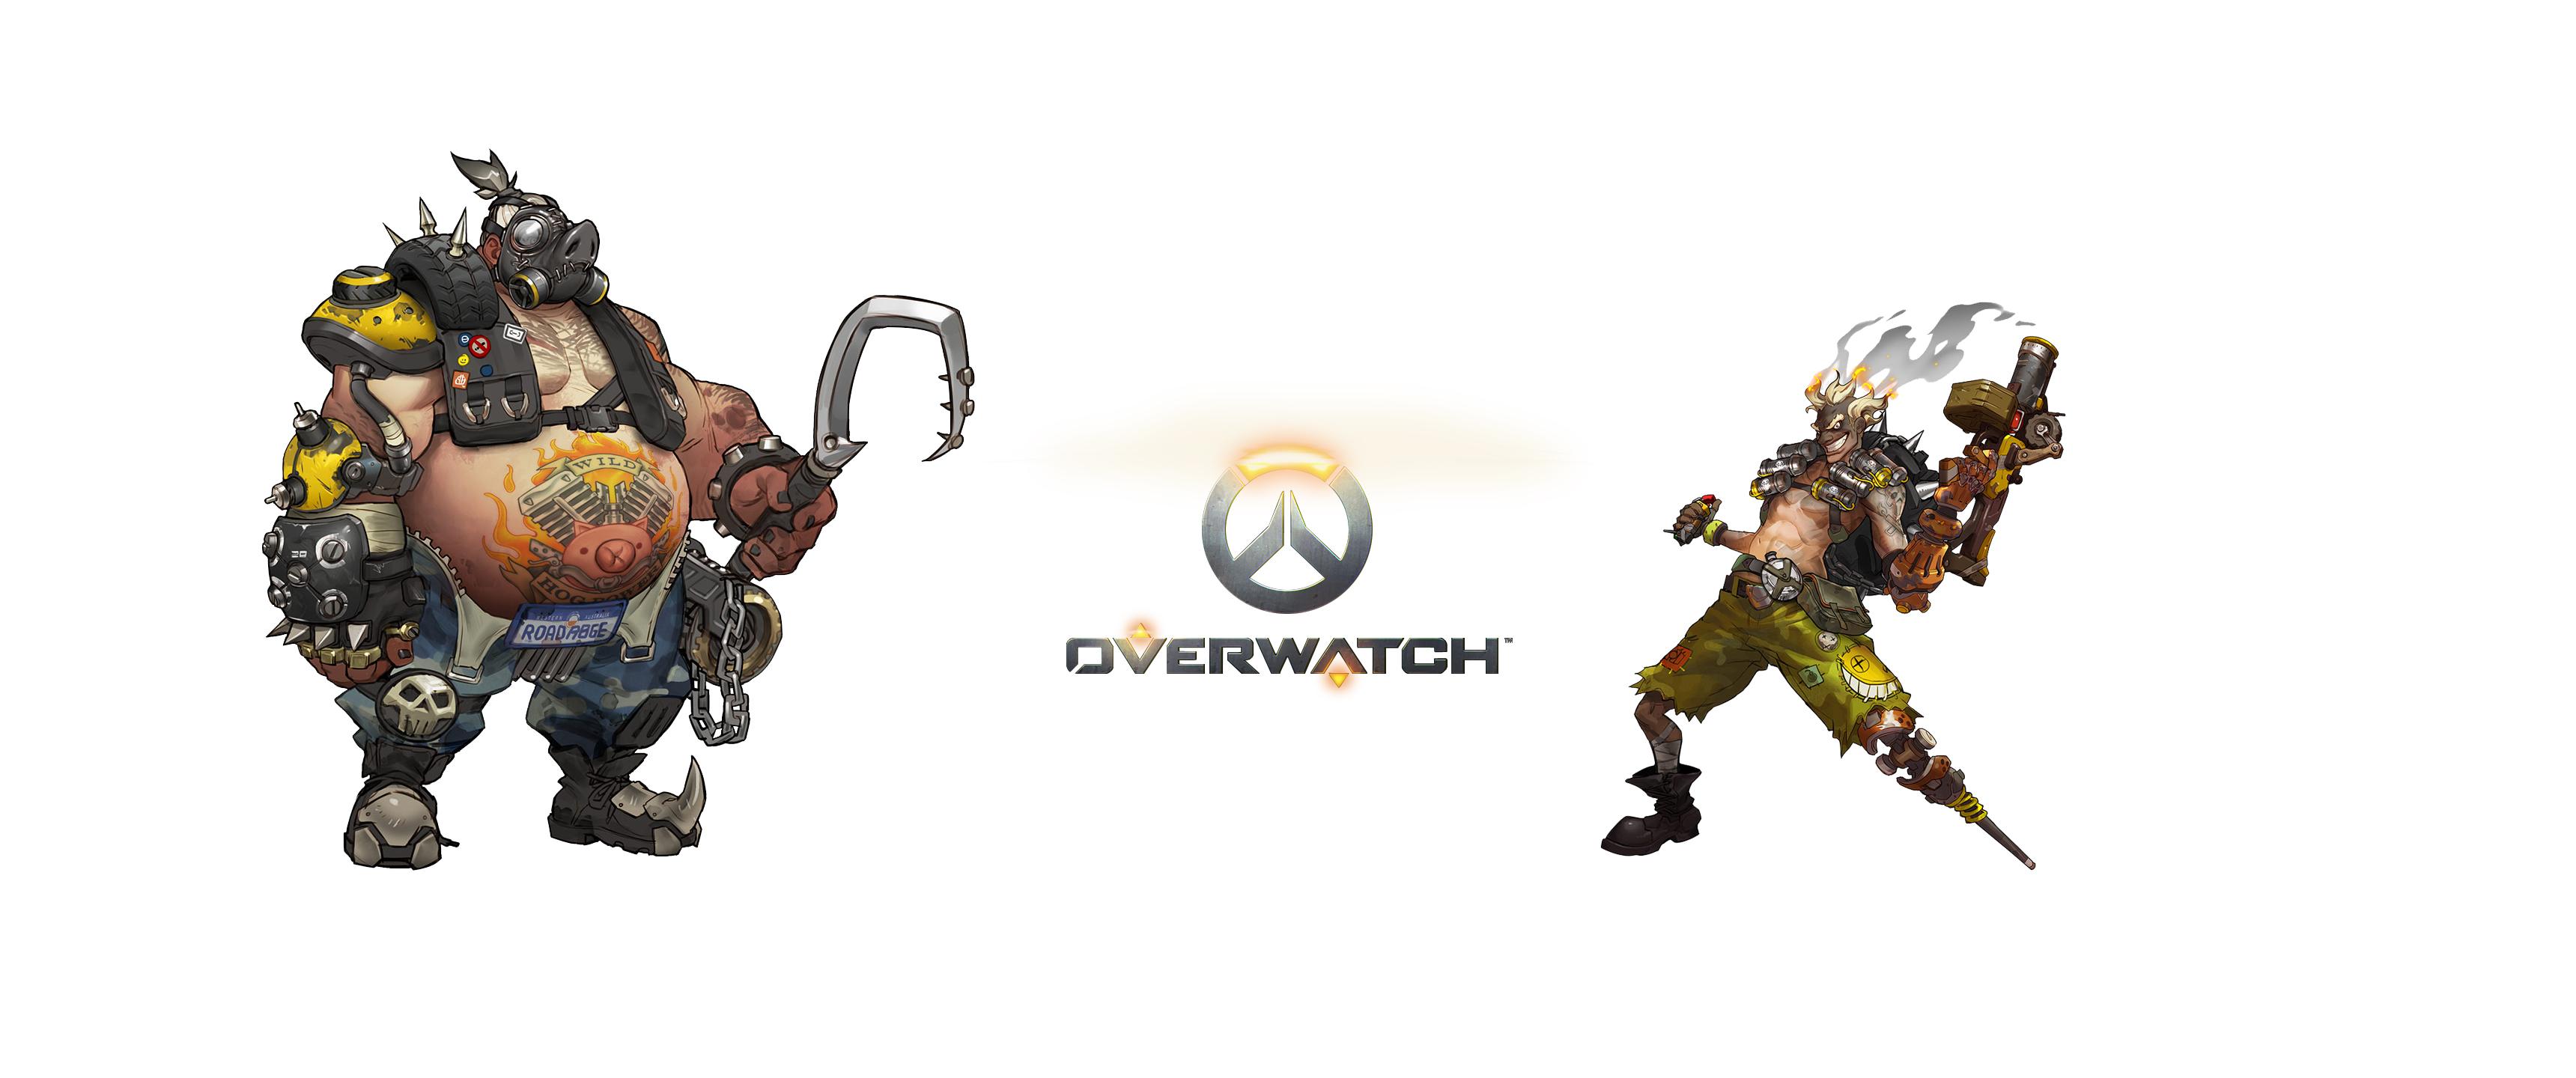 Free download wallpaper Overwatch, Video Game, Roadhog (Overwatch), Junkrat (Overwatch) on your PC desktop